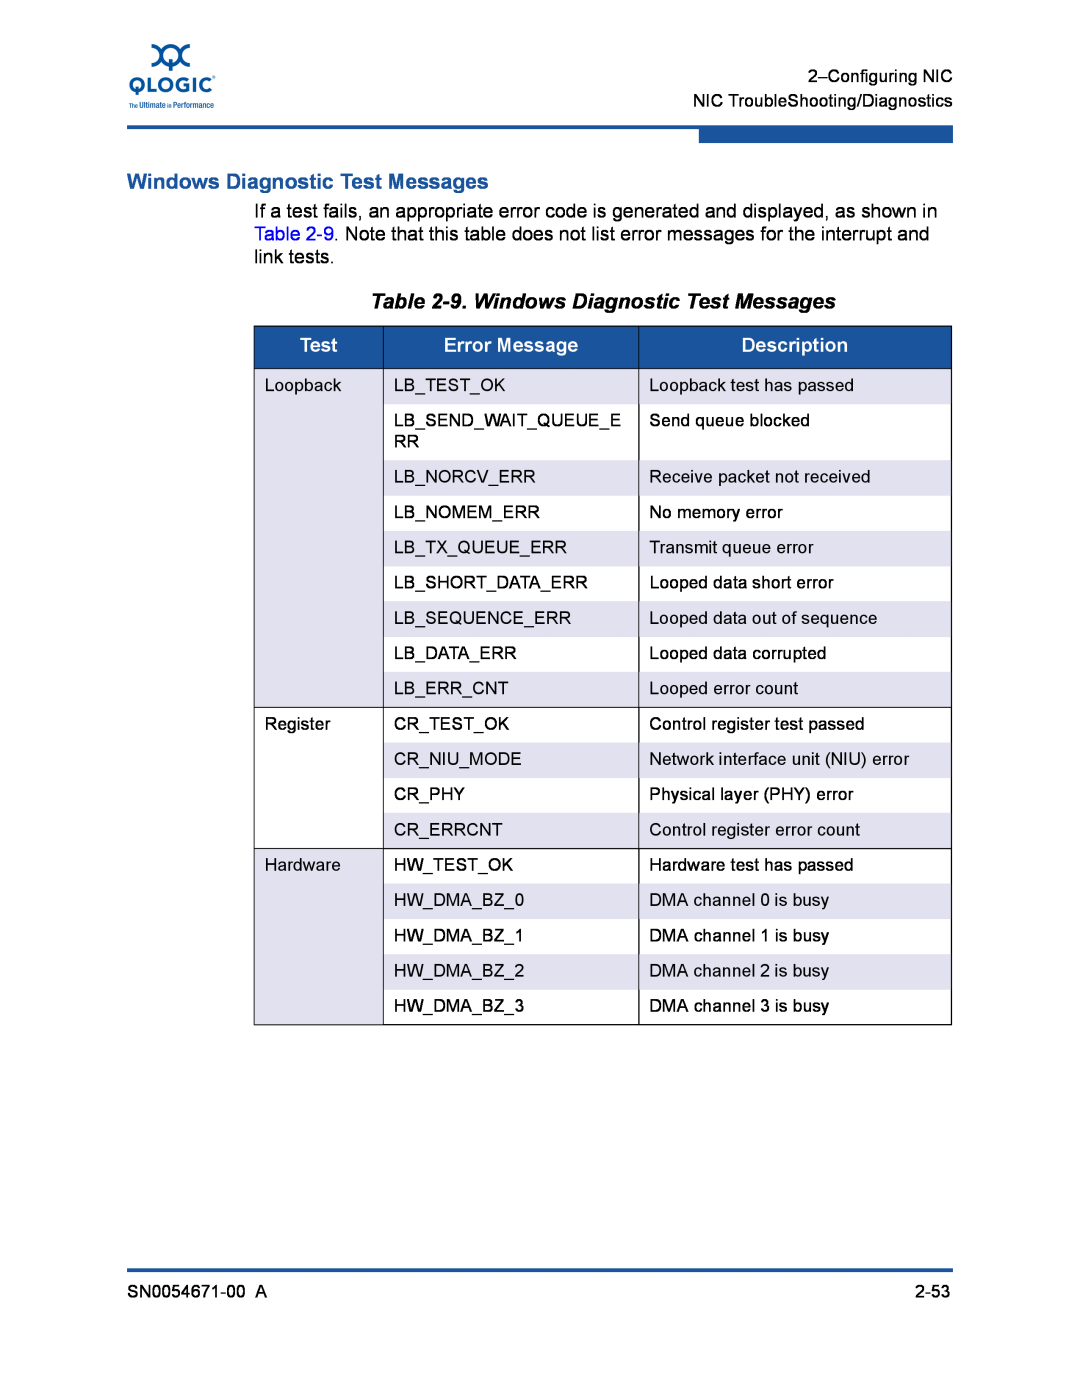 Q-Logic 3200, 8200 manual 9. Windows Diagnostic Test Messages, Error Message, Description 